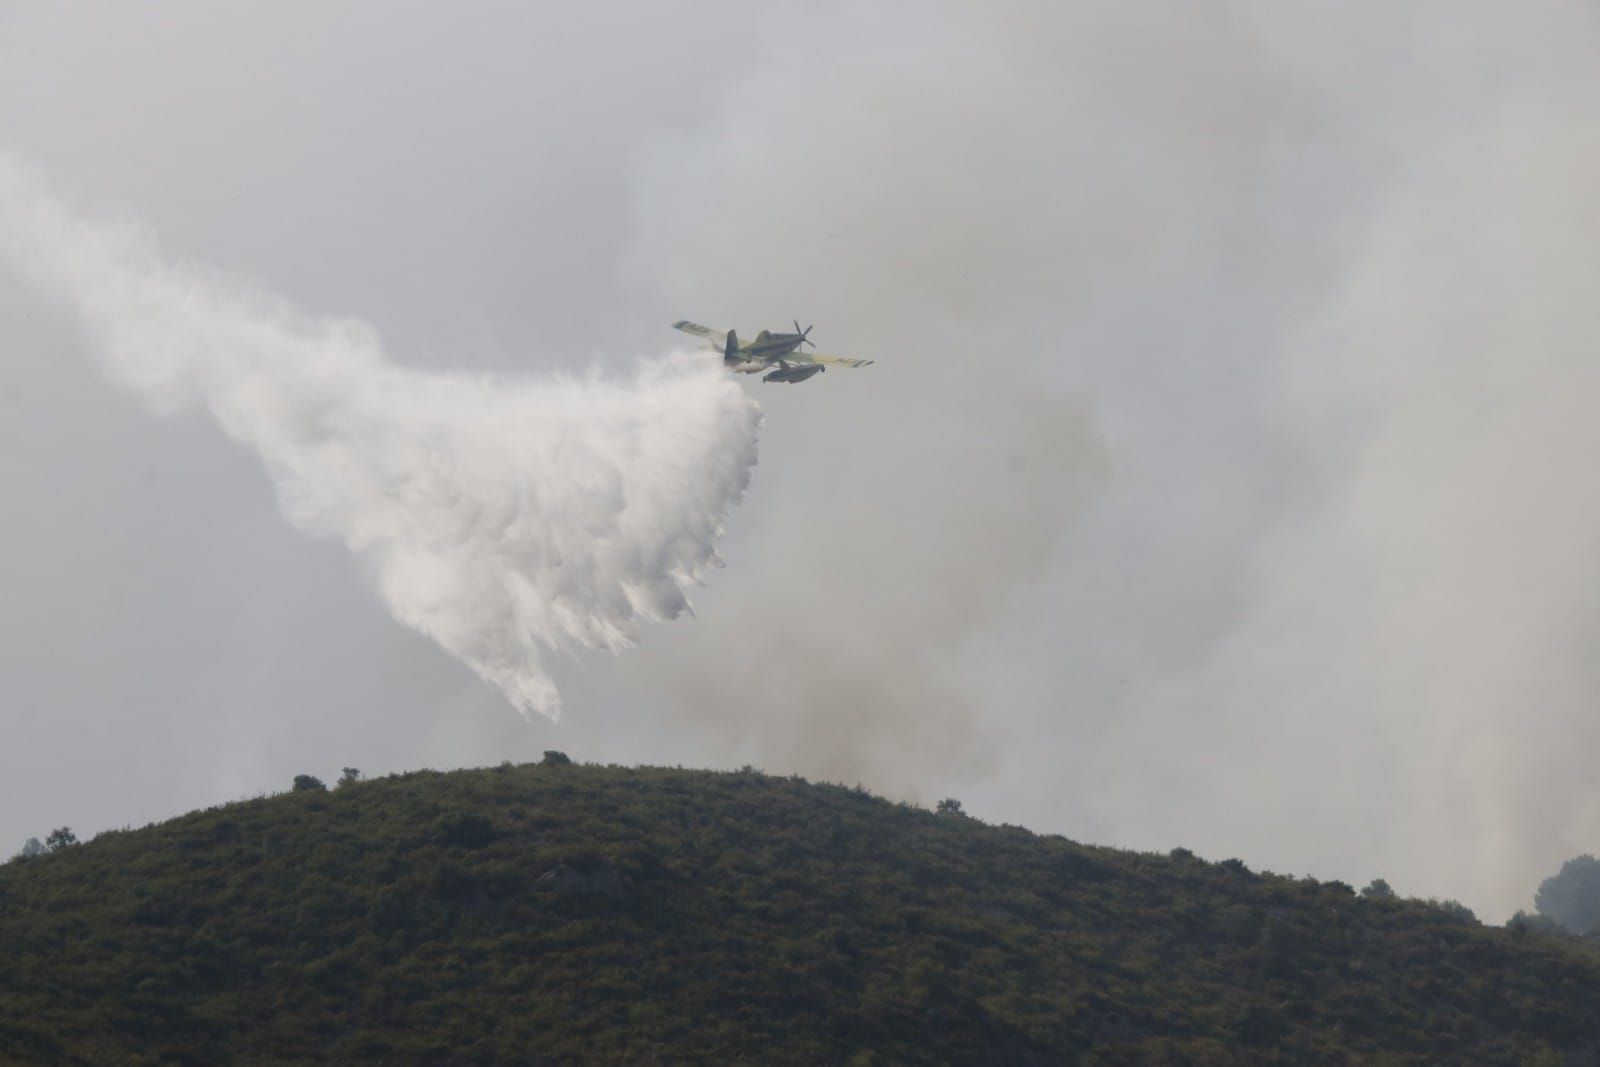 El incendio en la Vall d'Ebo calcina 2.200 hectáreas y se estudian desalojos